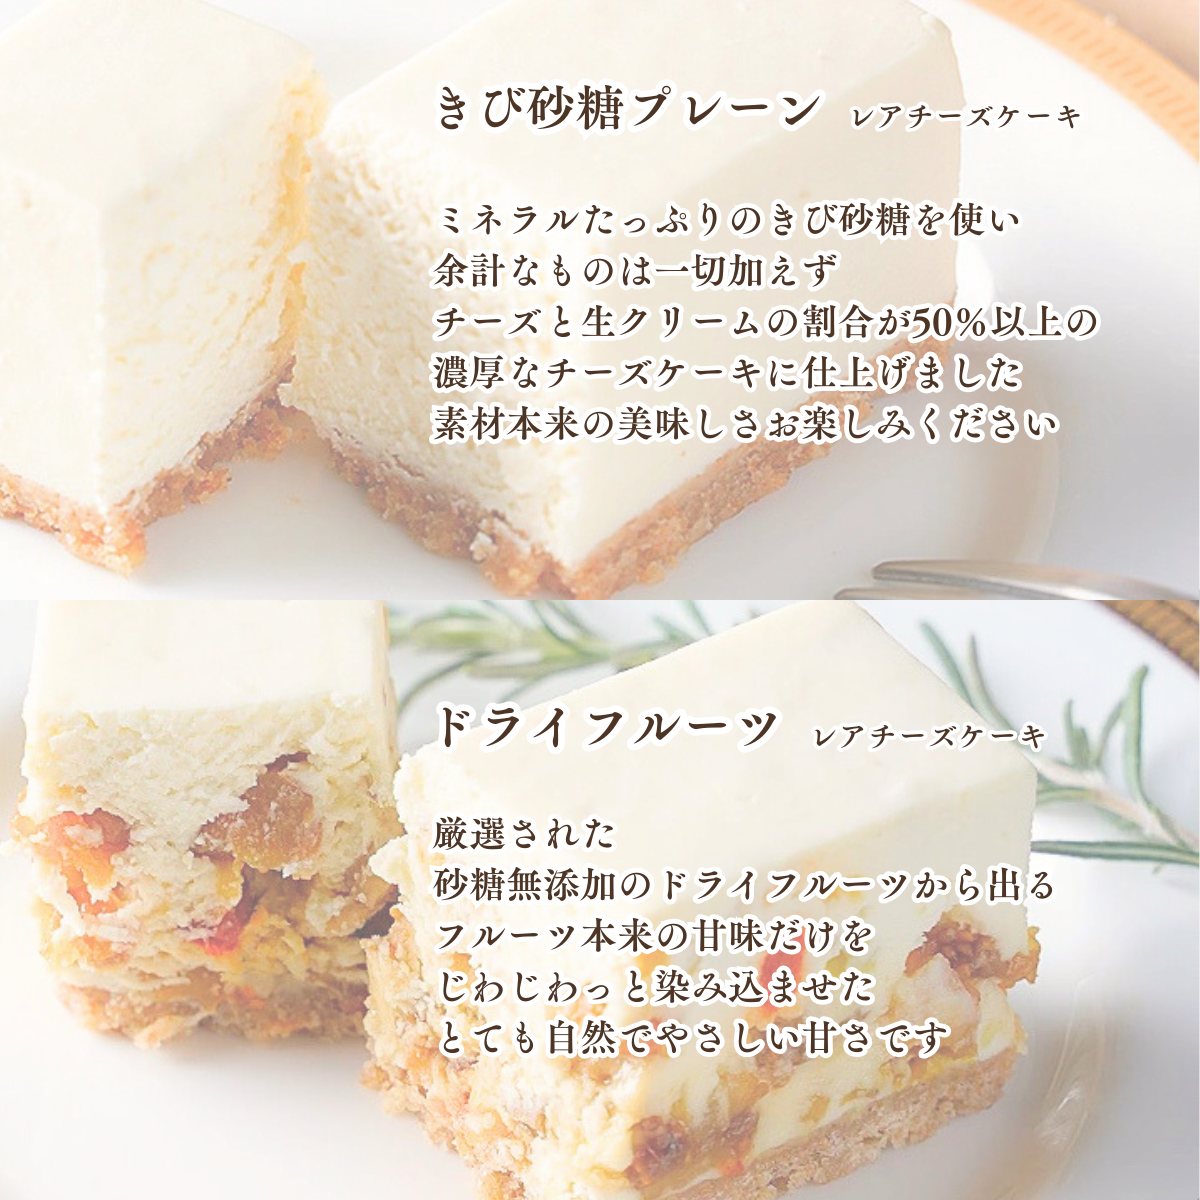 コガネイチーズケーキ6種アソートBOX 送料込